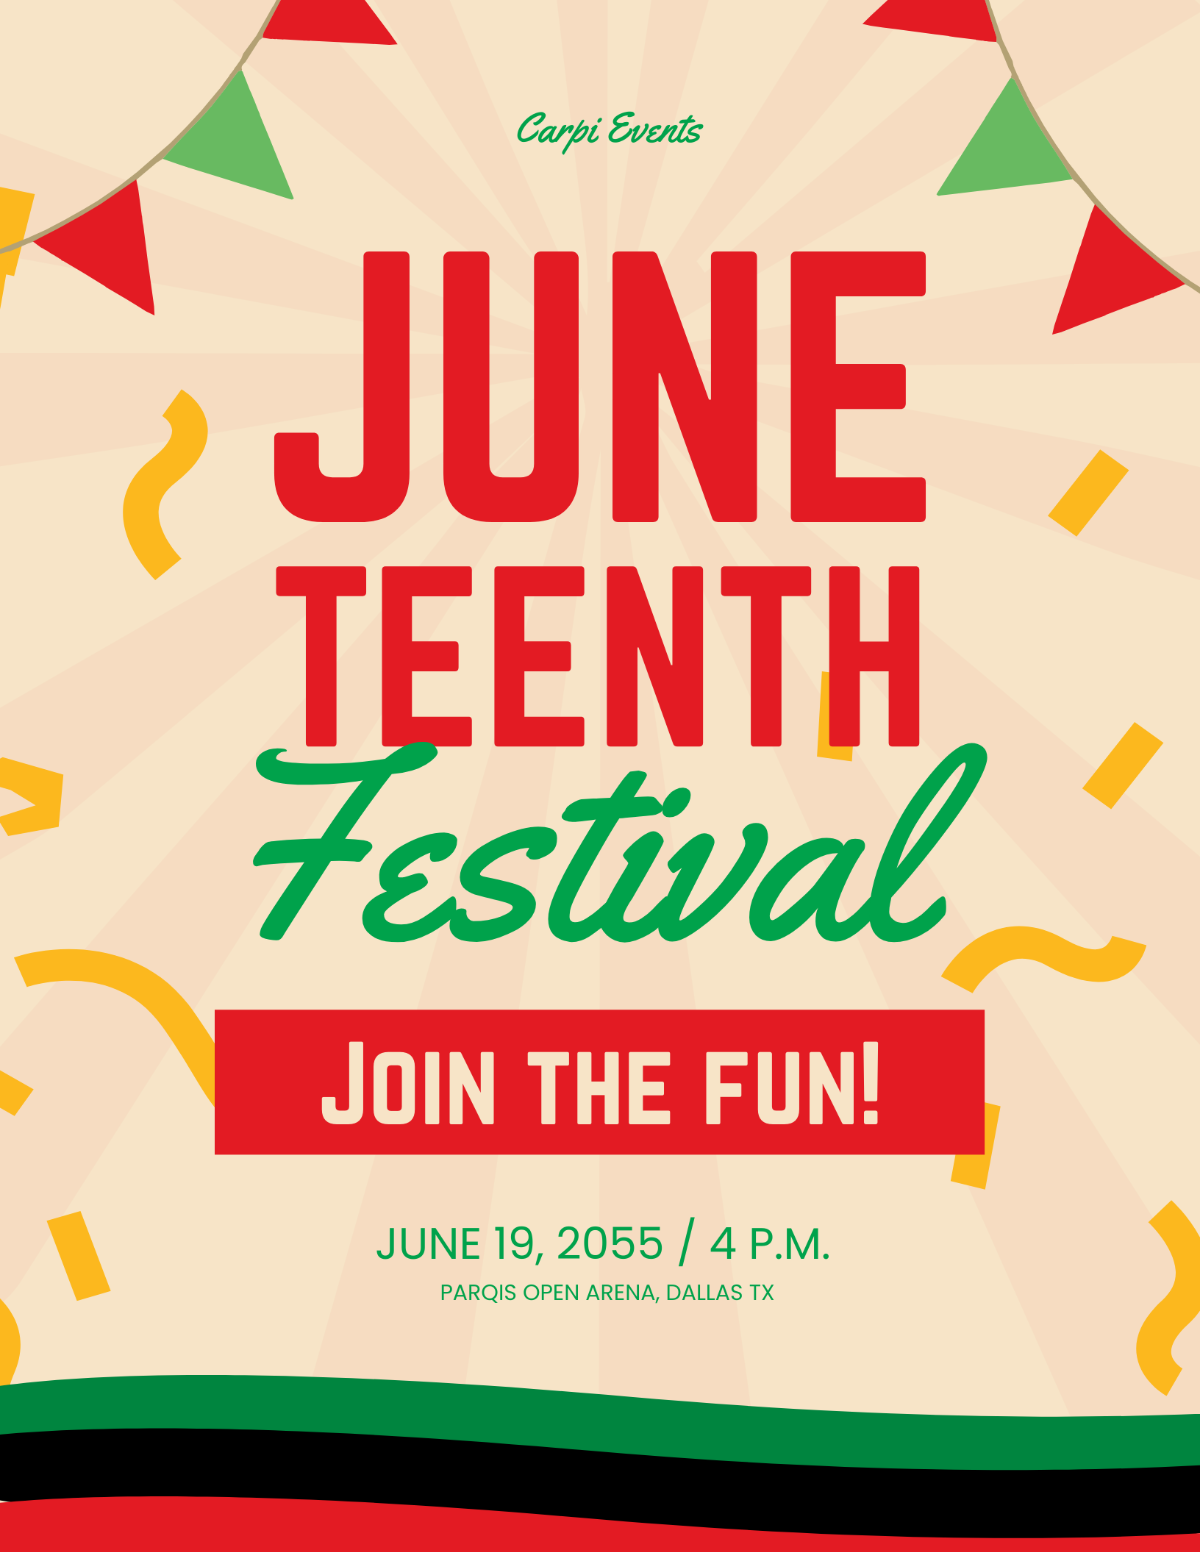 Juneteenth Festival Flyer